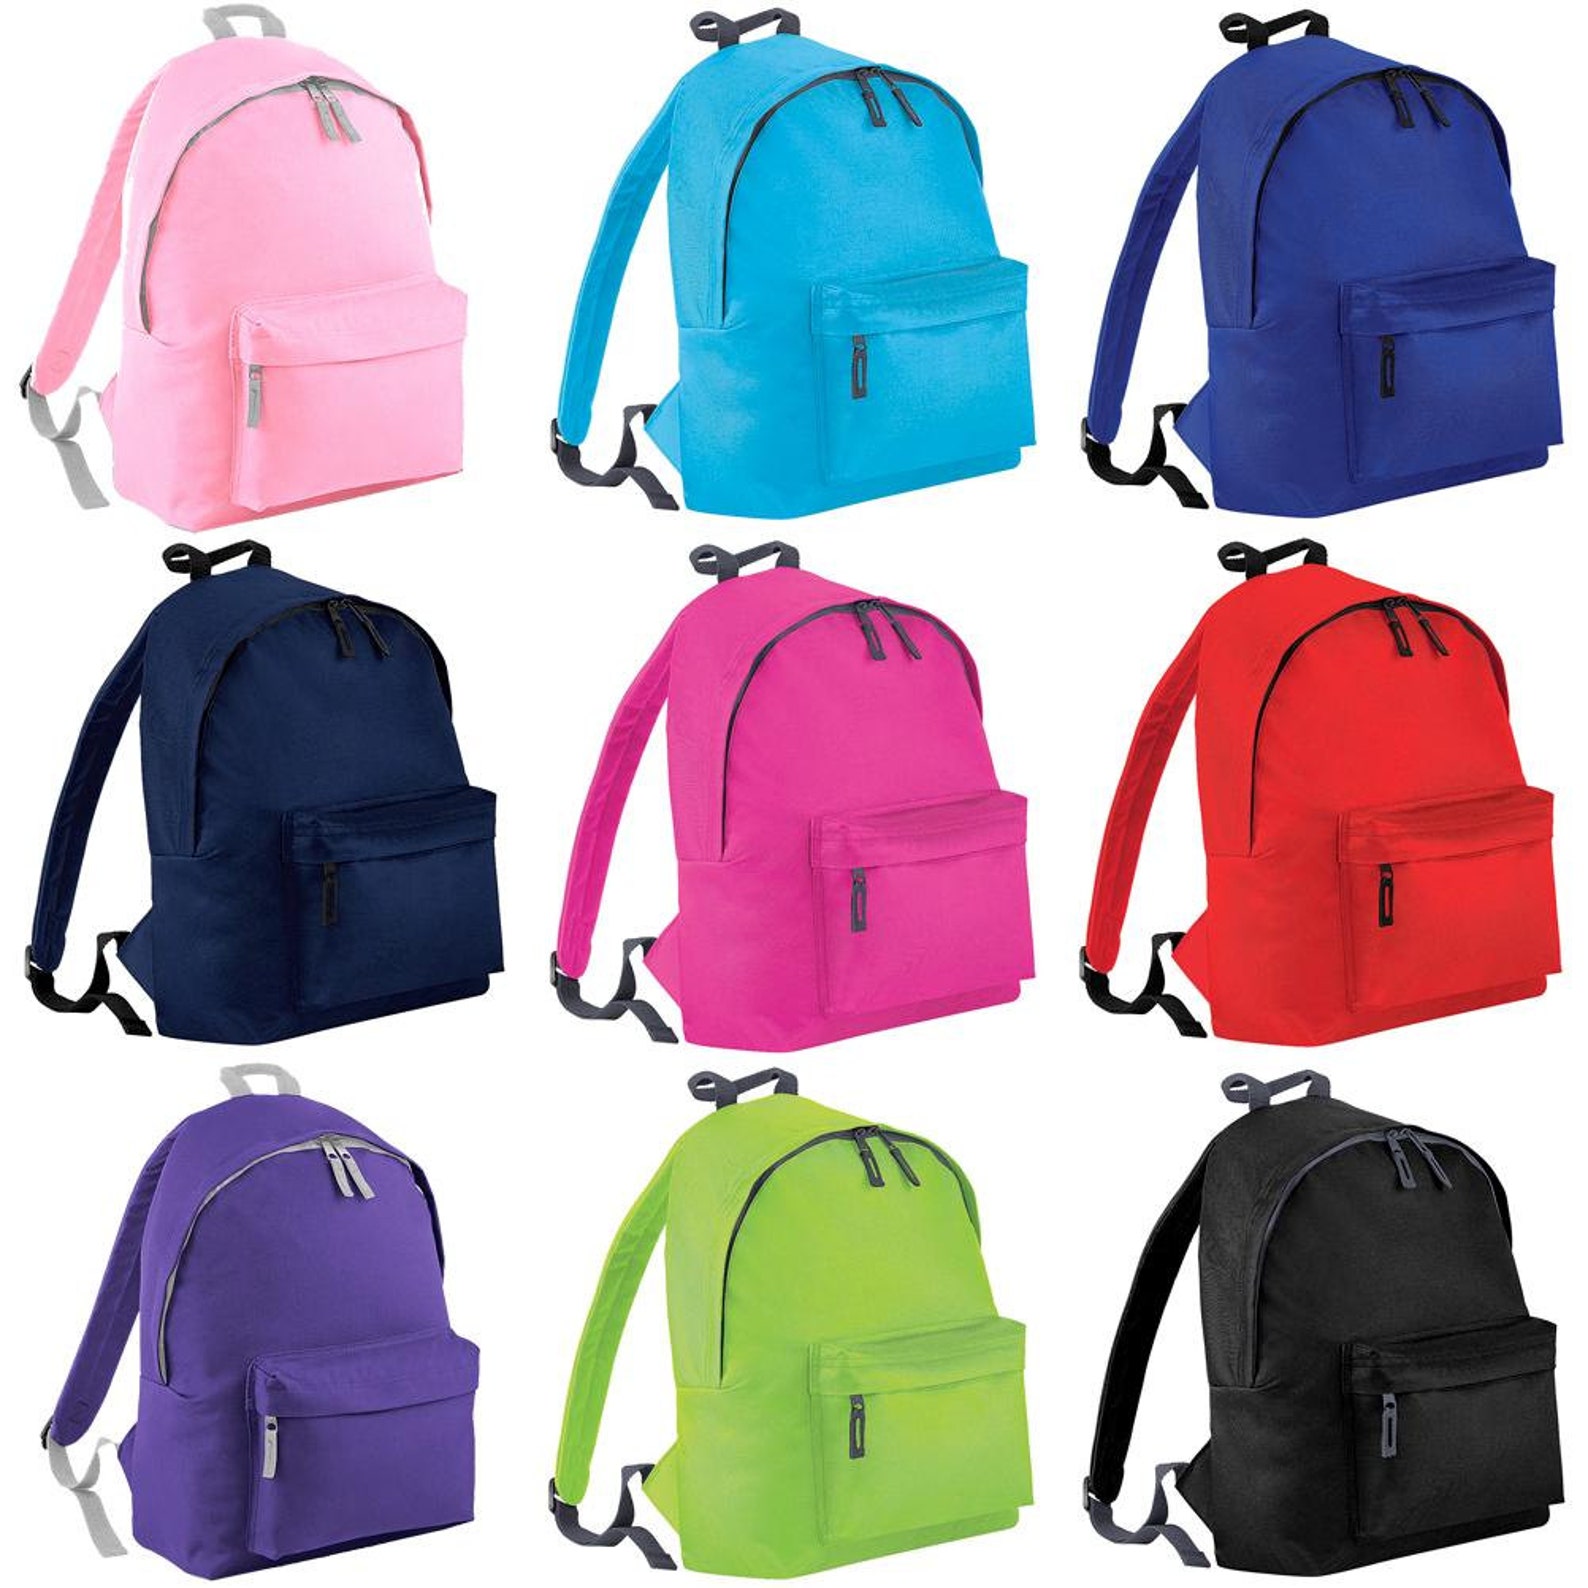 personalised embroidered junior ballet rucksack/backpack dance leotard shoe bag bc1. personalized rucksack/backpack